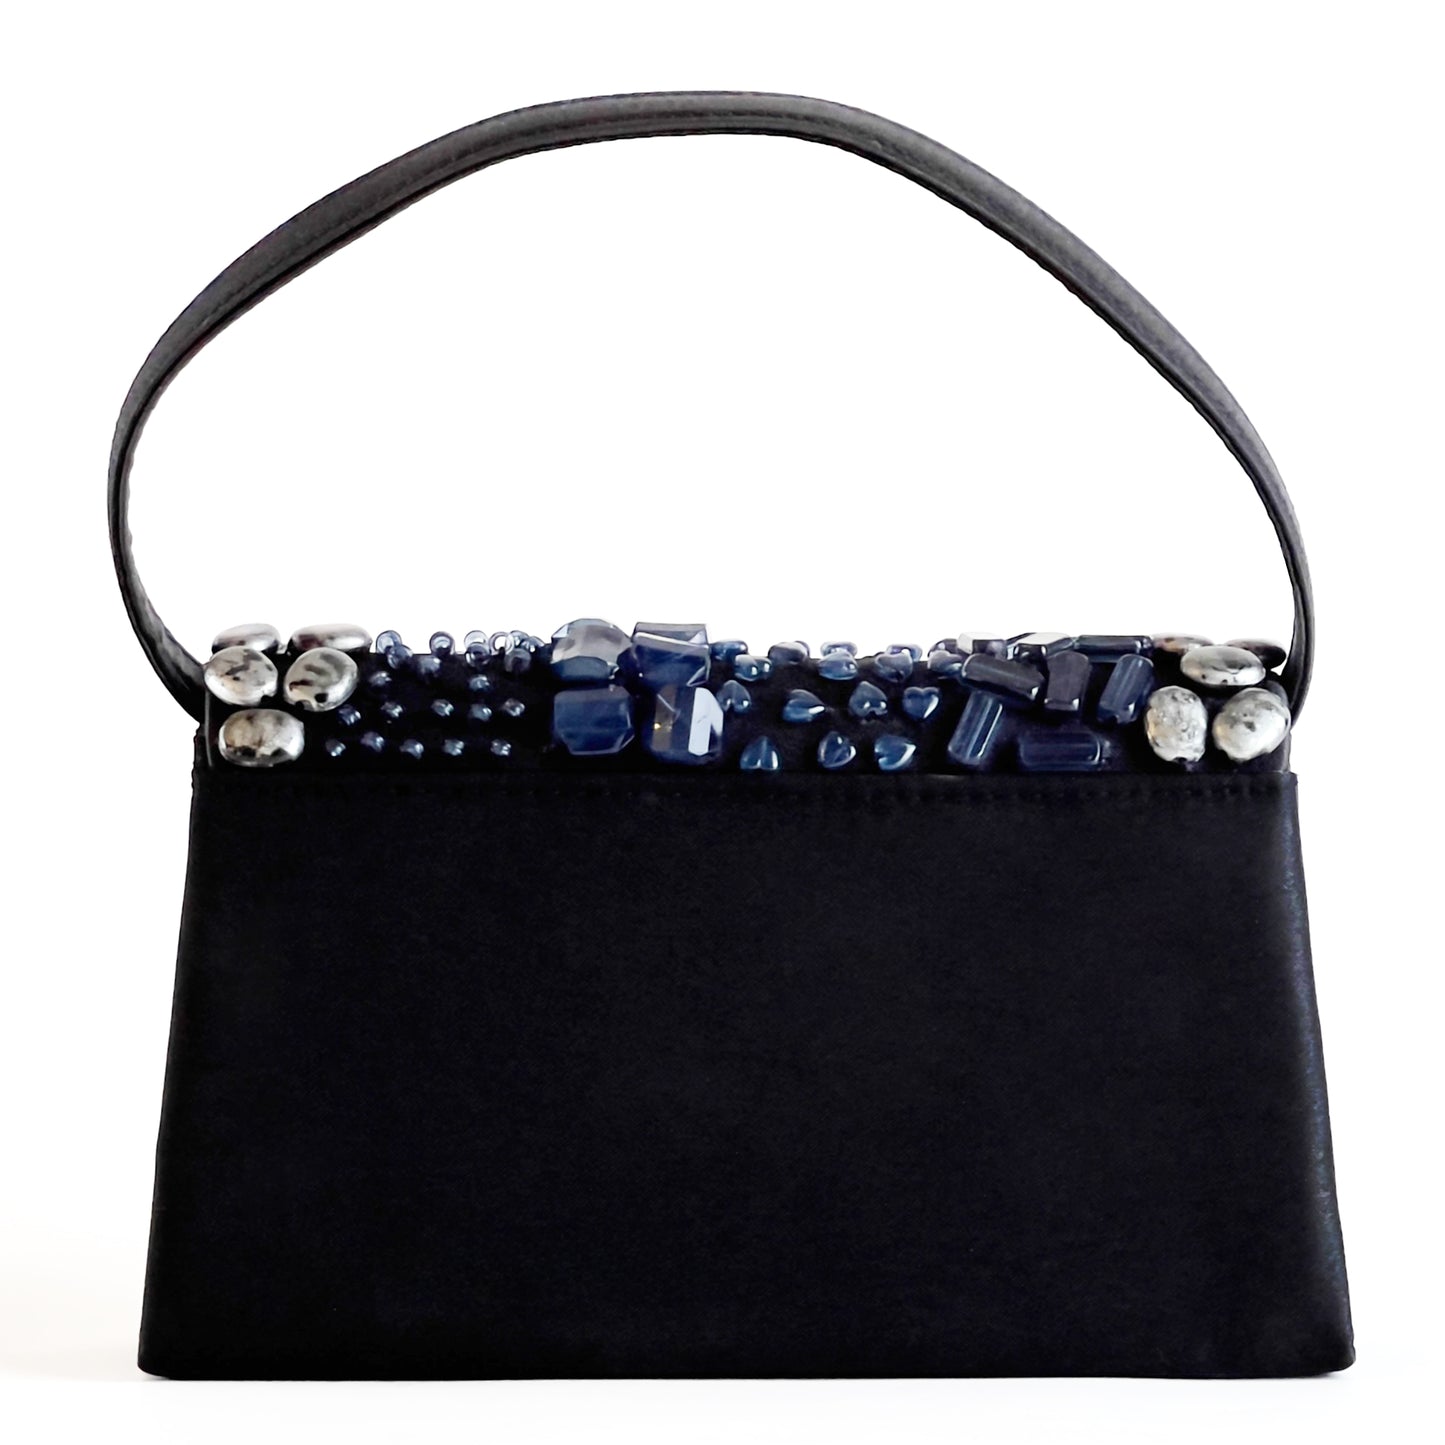 Bijoux-Terner-Black-Beaded-Shoulder-Bag.Back-View.-Shop-eBargainsAndDeals.com